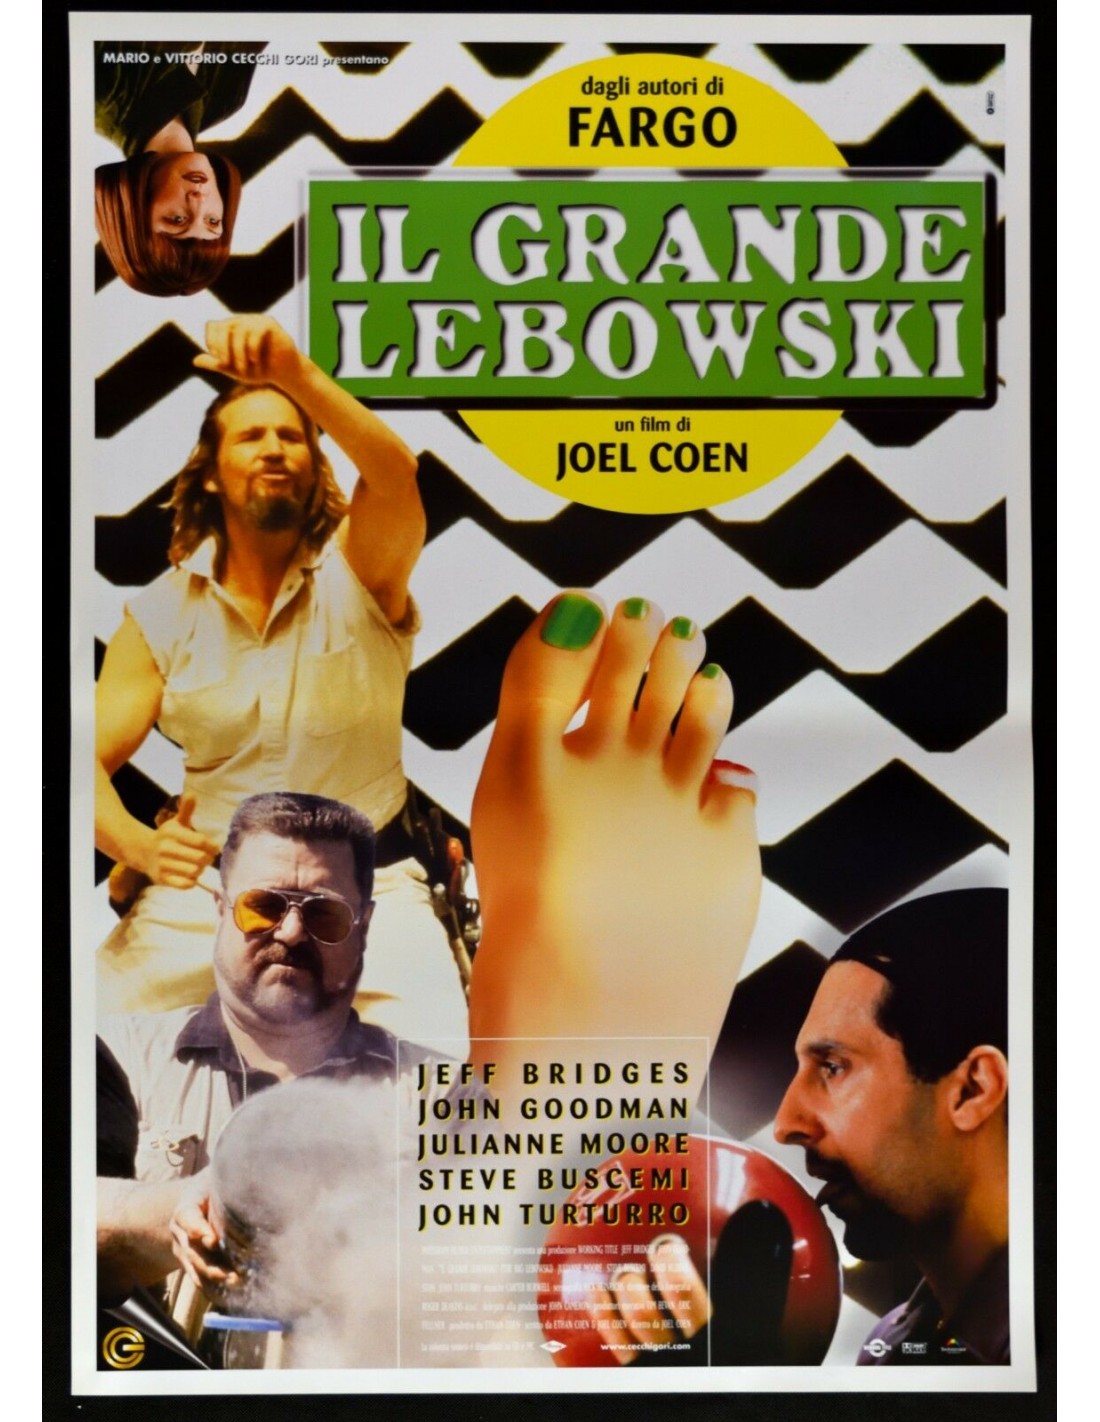 Il Grande Lebowski, il cult movie dei fratelli Coen torna al cinema in versione 4K